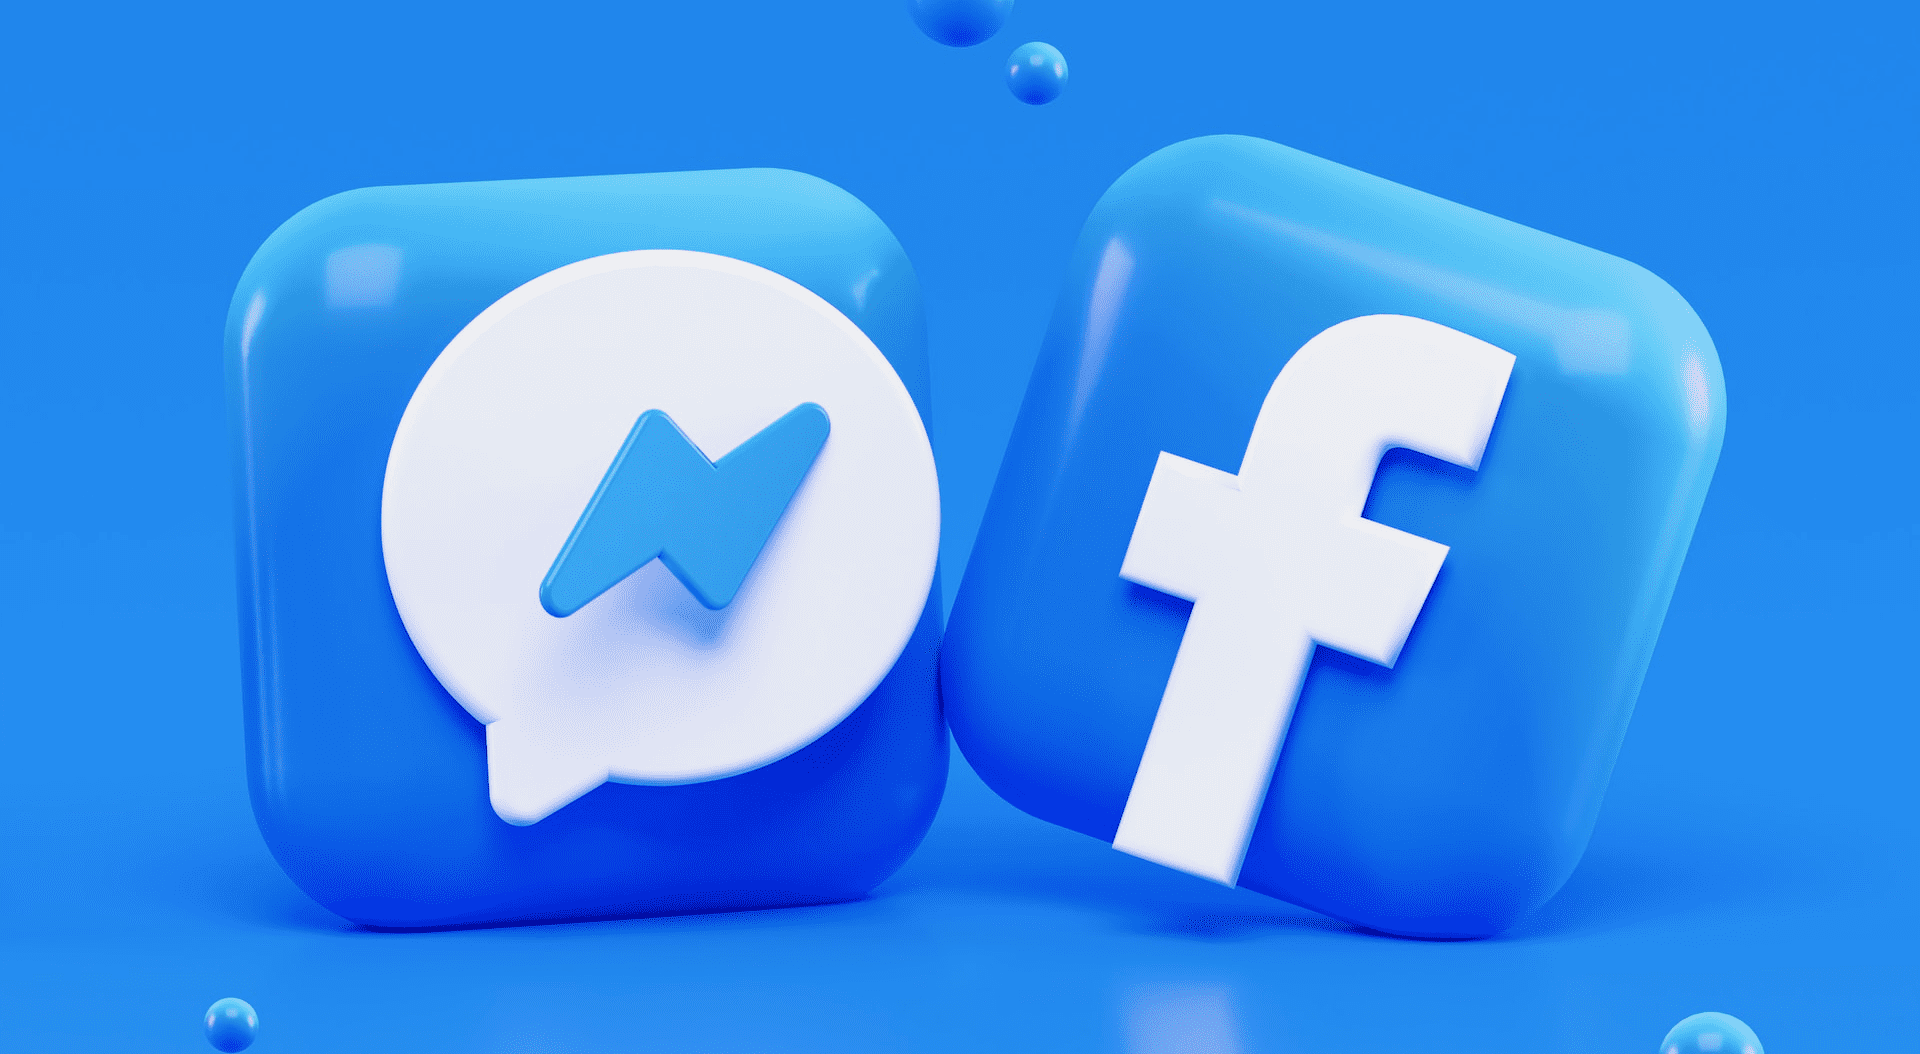 استخدام Messenger دون التوفر على حساب فايسبوك